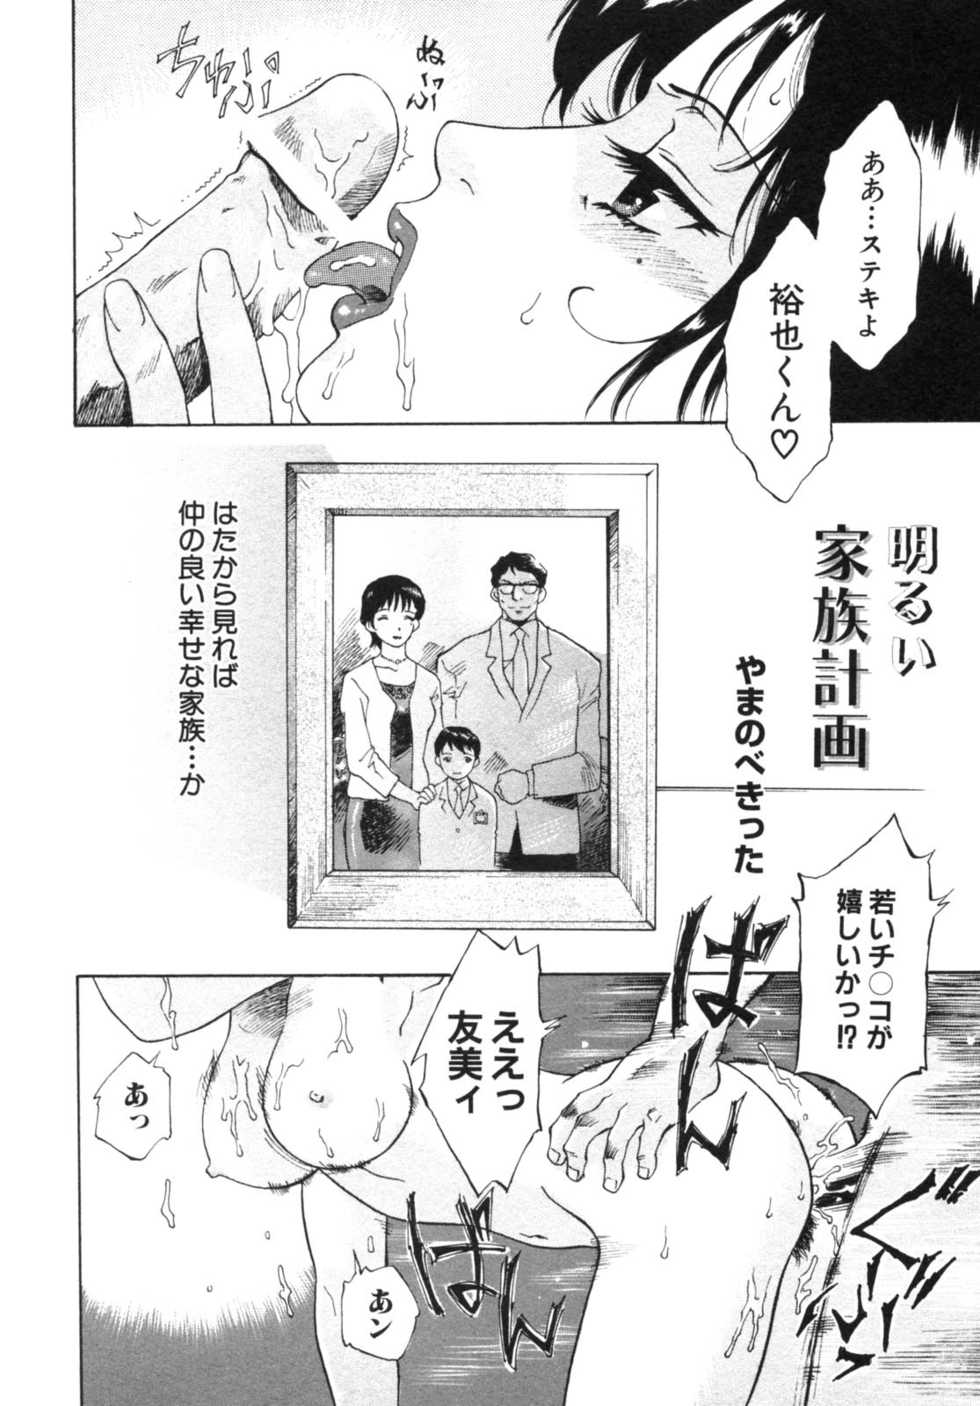 [Anthology] Haitokubana - Immoral Flower Vol. 2 - Page 6